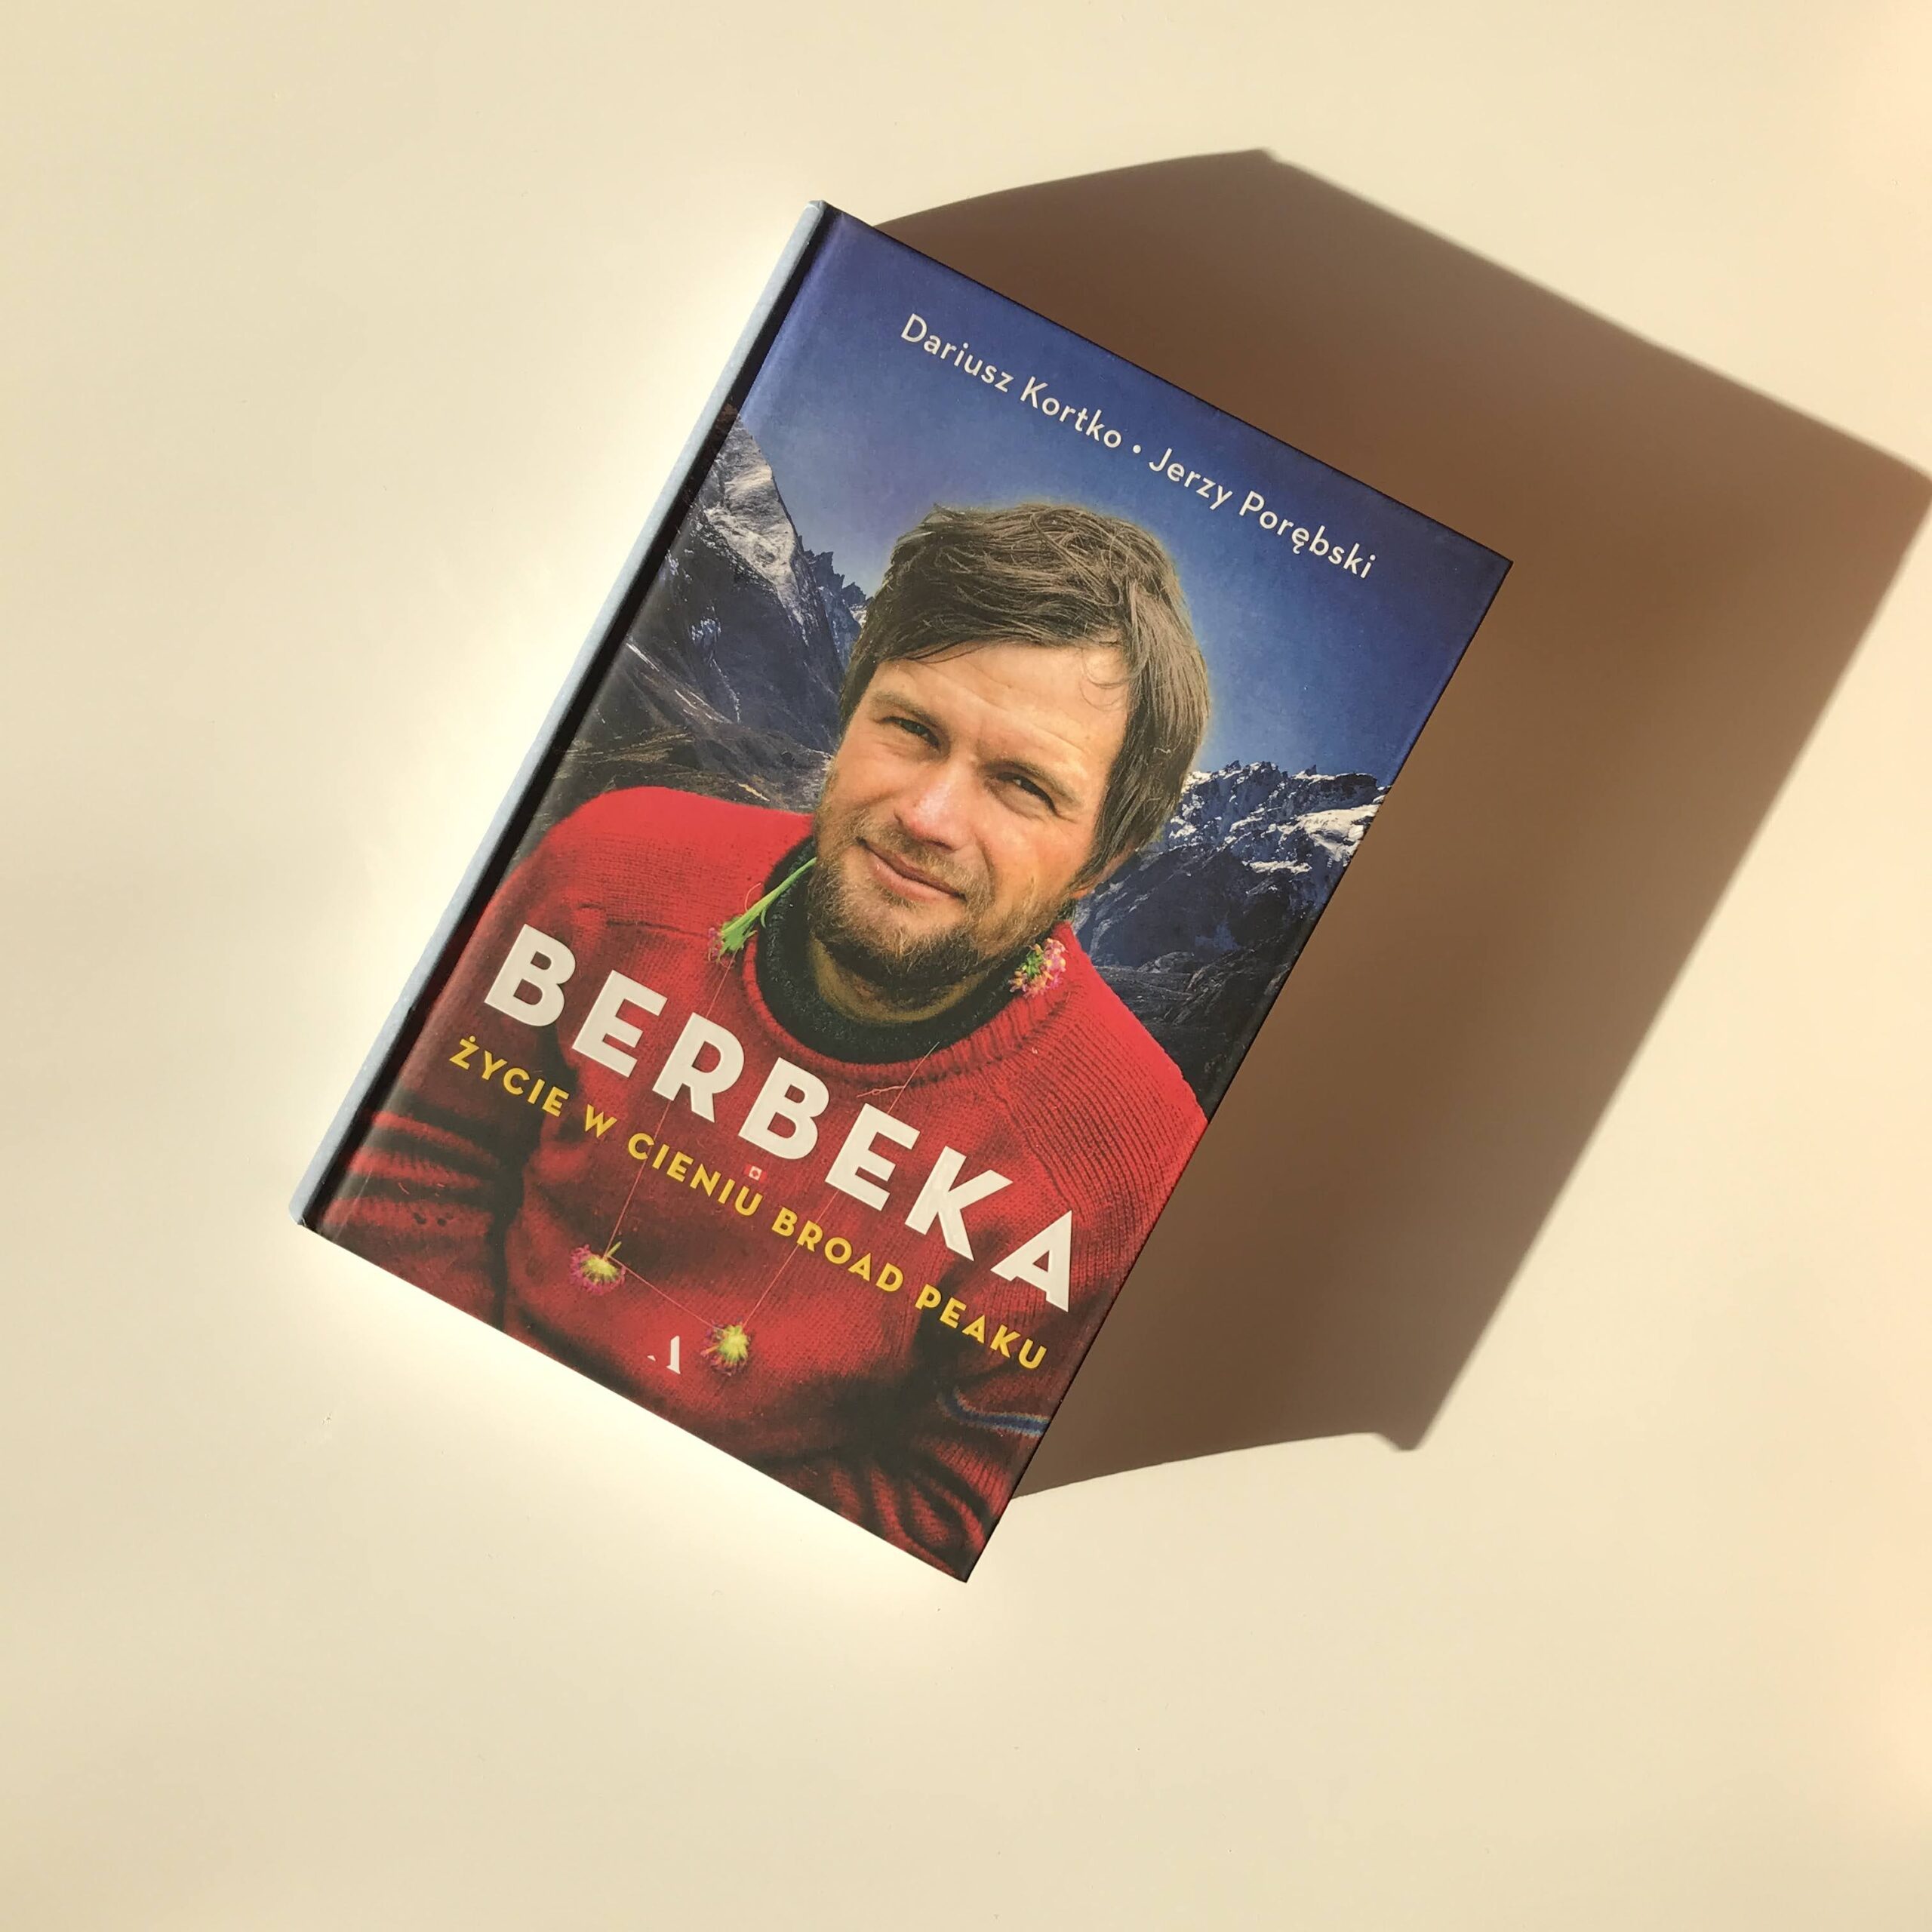 O książce: Berbeka – Życie w cieniu Broad Peaku